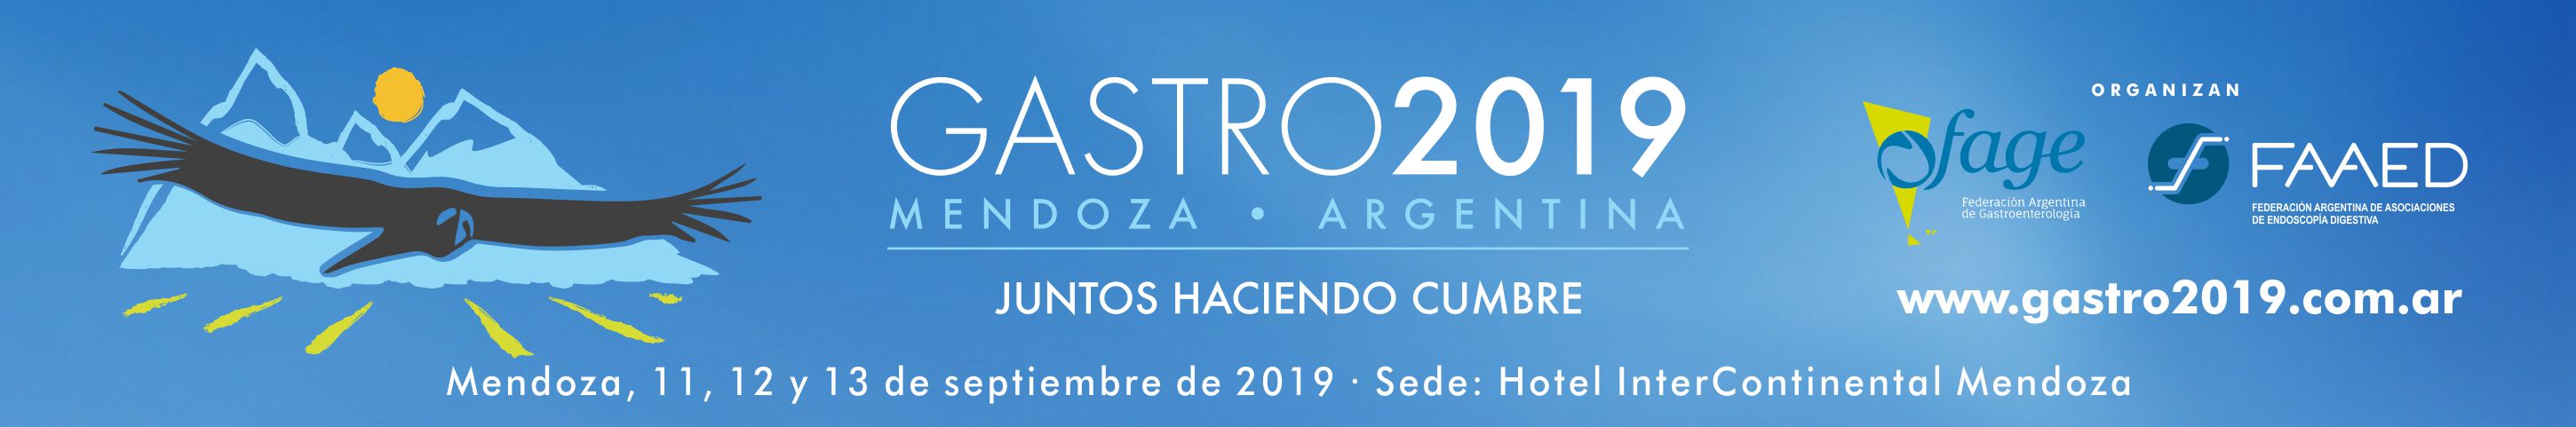 Certficado Gastro 2019